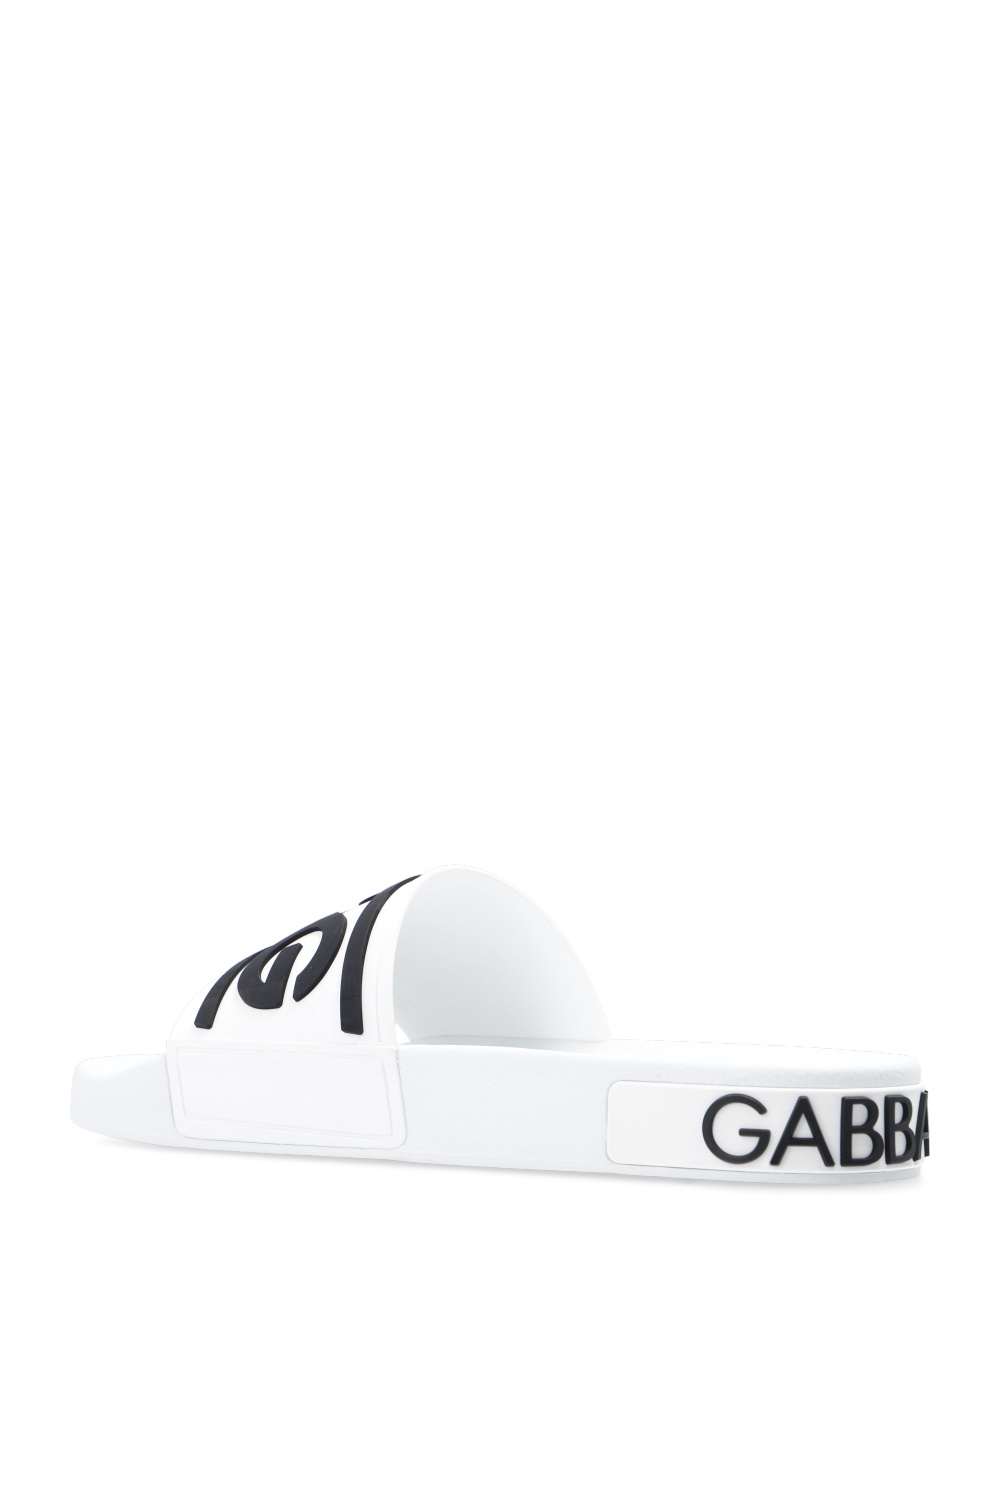 Dolce & Gabbana ‘Ciabatta’ slides with logo